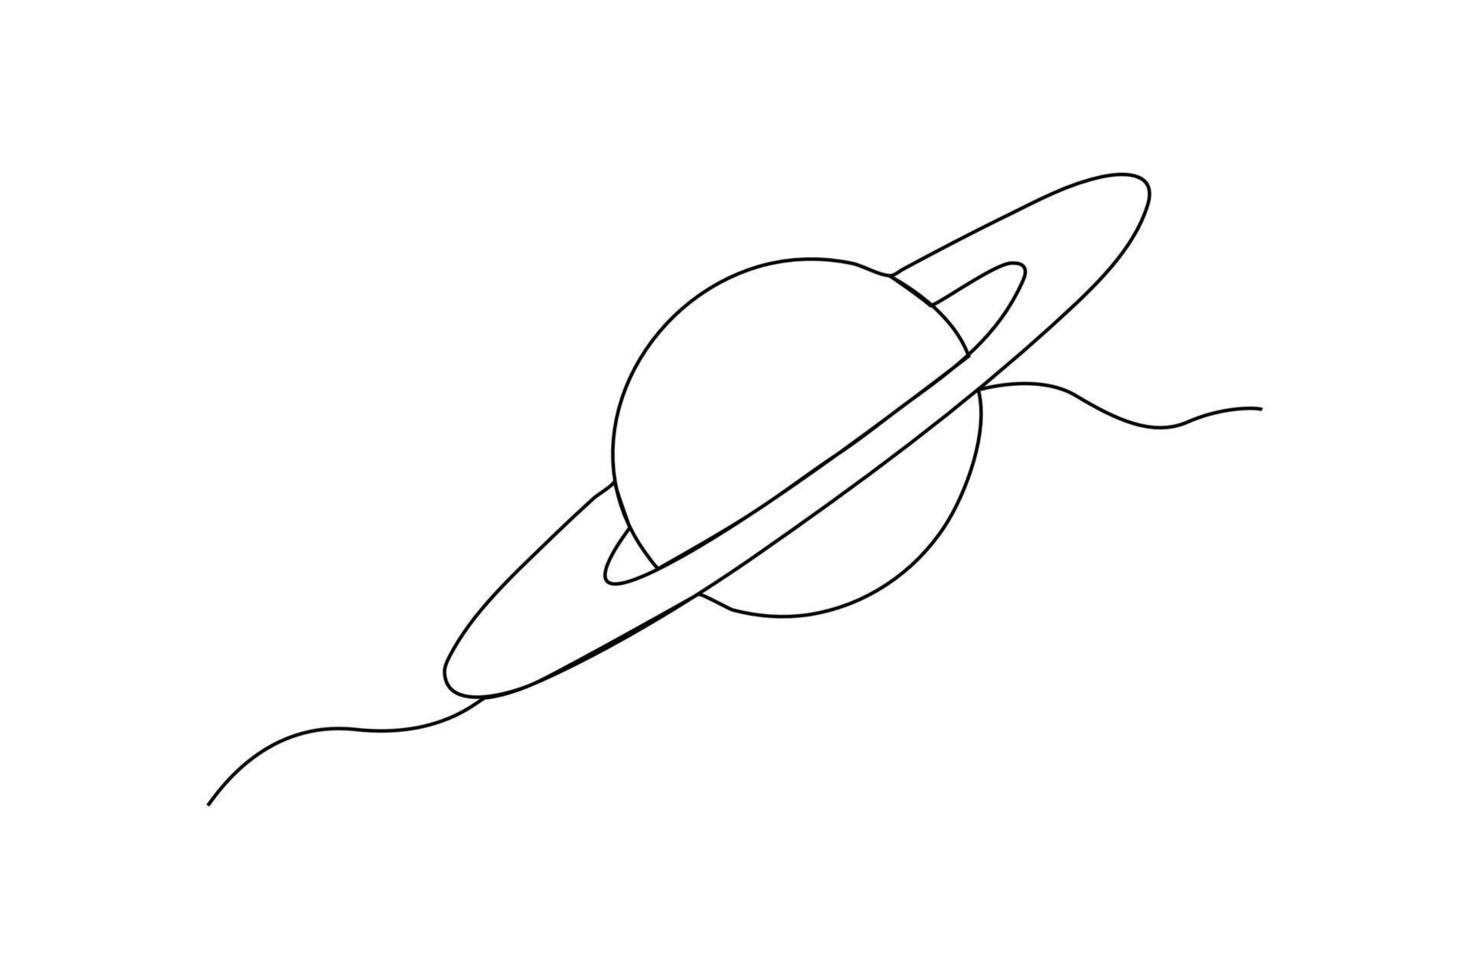 doorlopend een lijn tekening planeet Saturnus. ruimte concept. single lijn trek ontwerp vector grafisch illustratie.